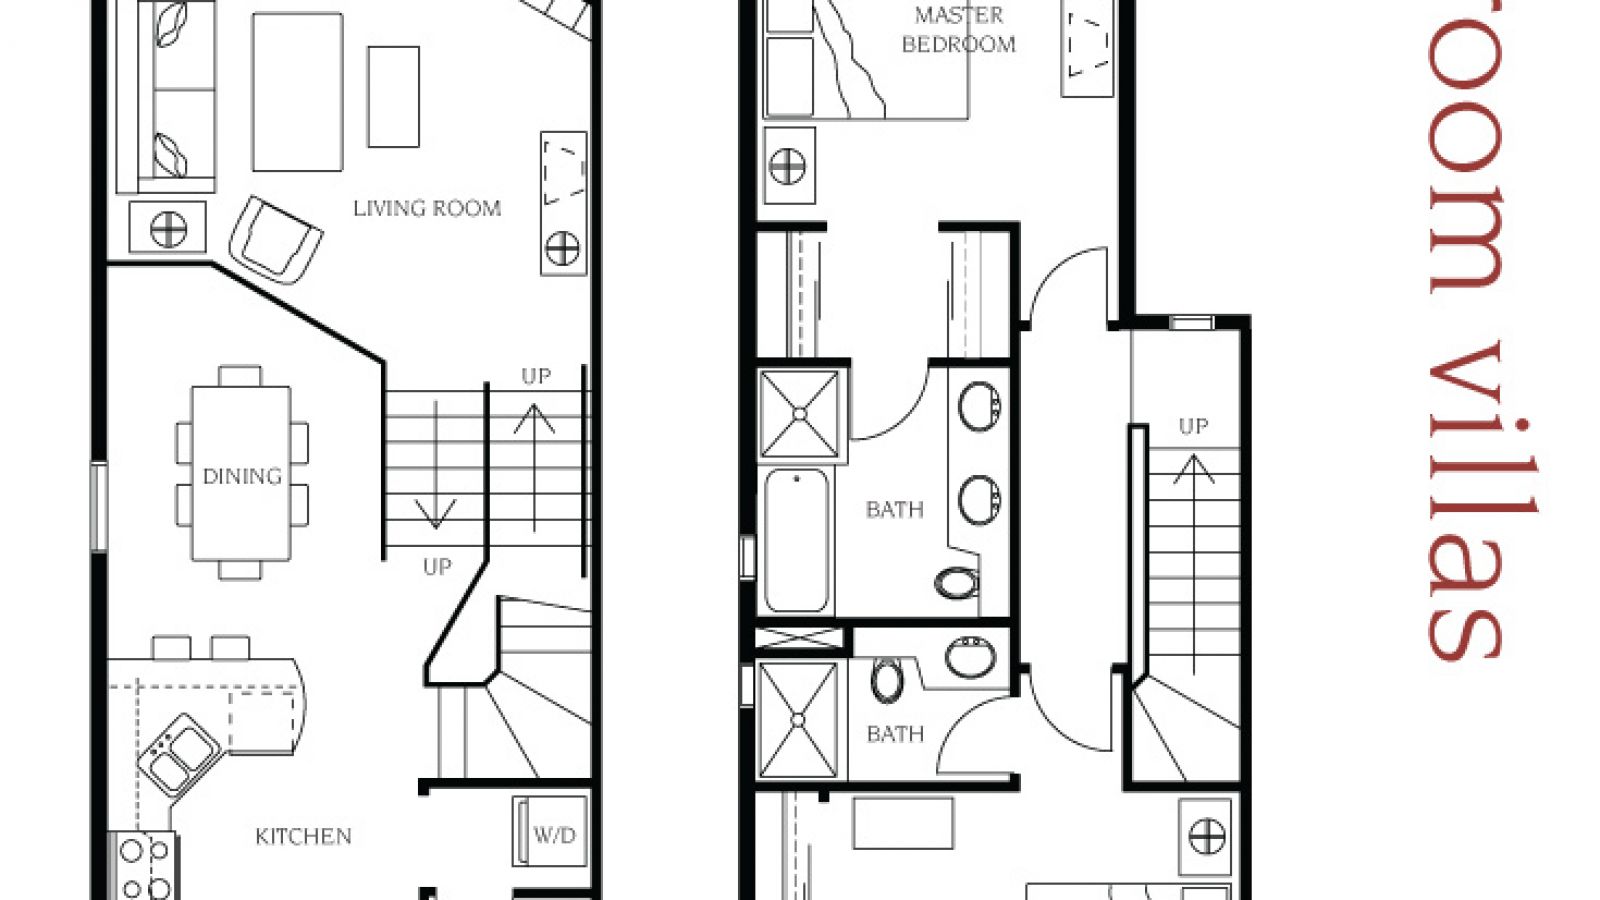 2 bedroom villa floor plan at Manteo